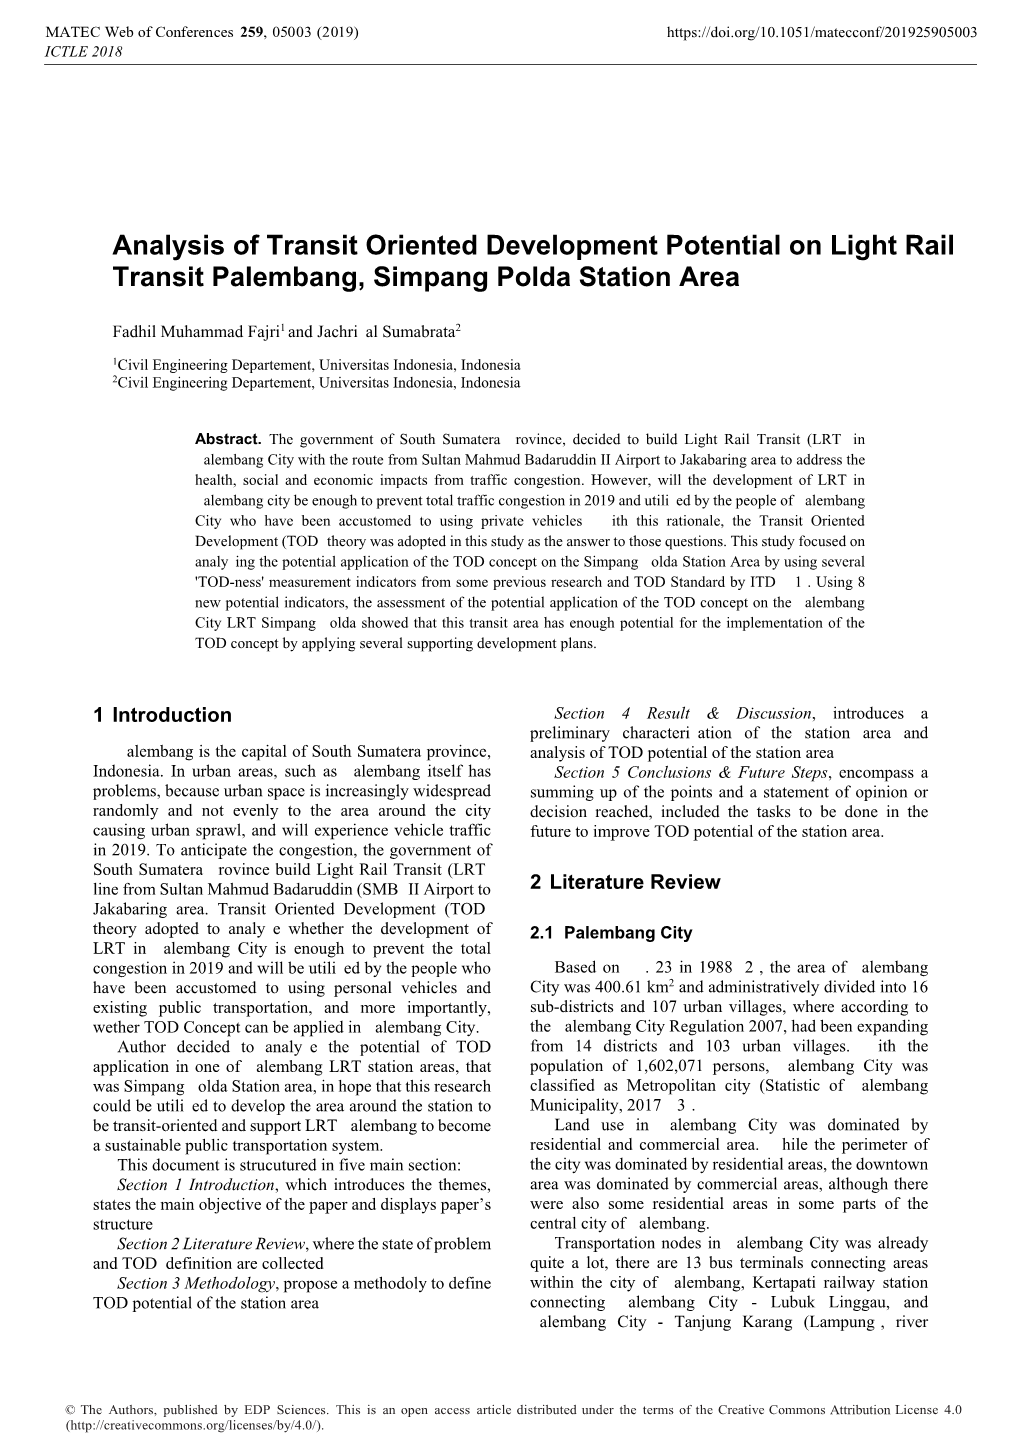 Analysis of Transit Oriented Development Potential on Light Rail Transit Palembang, Simpang Polda Station Area